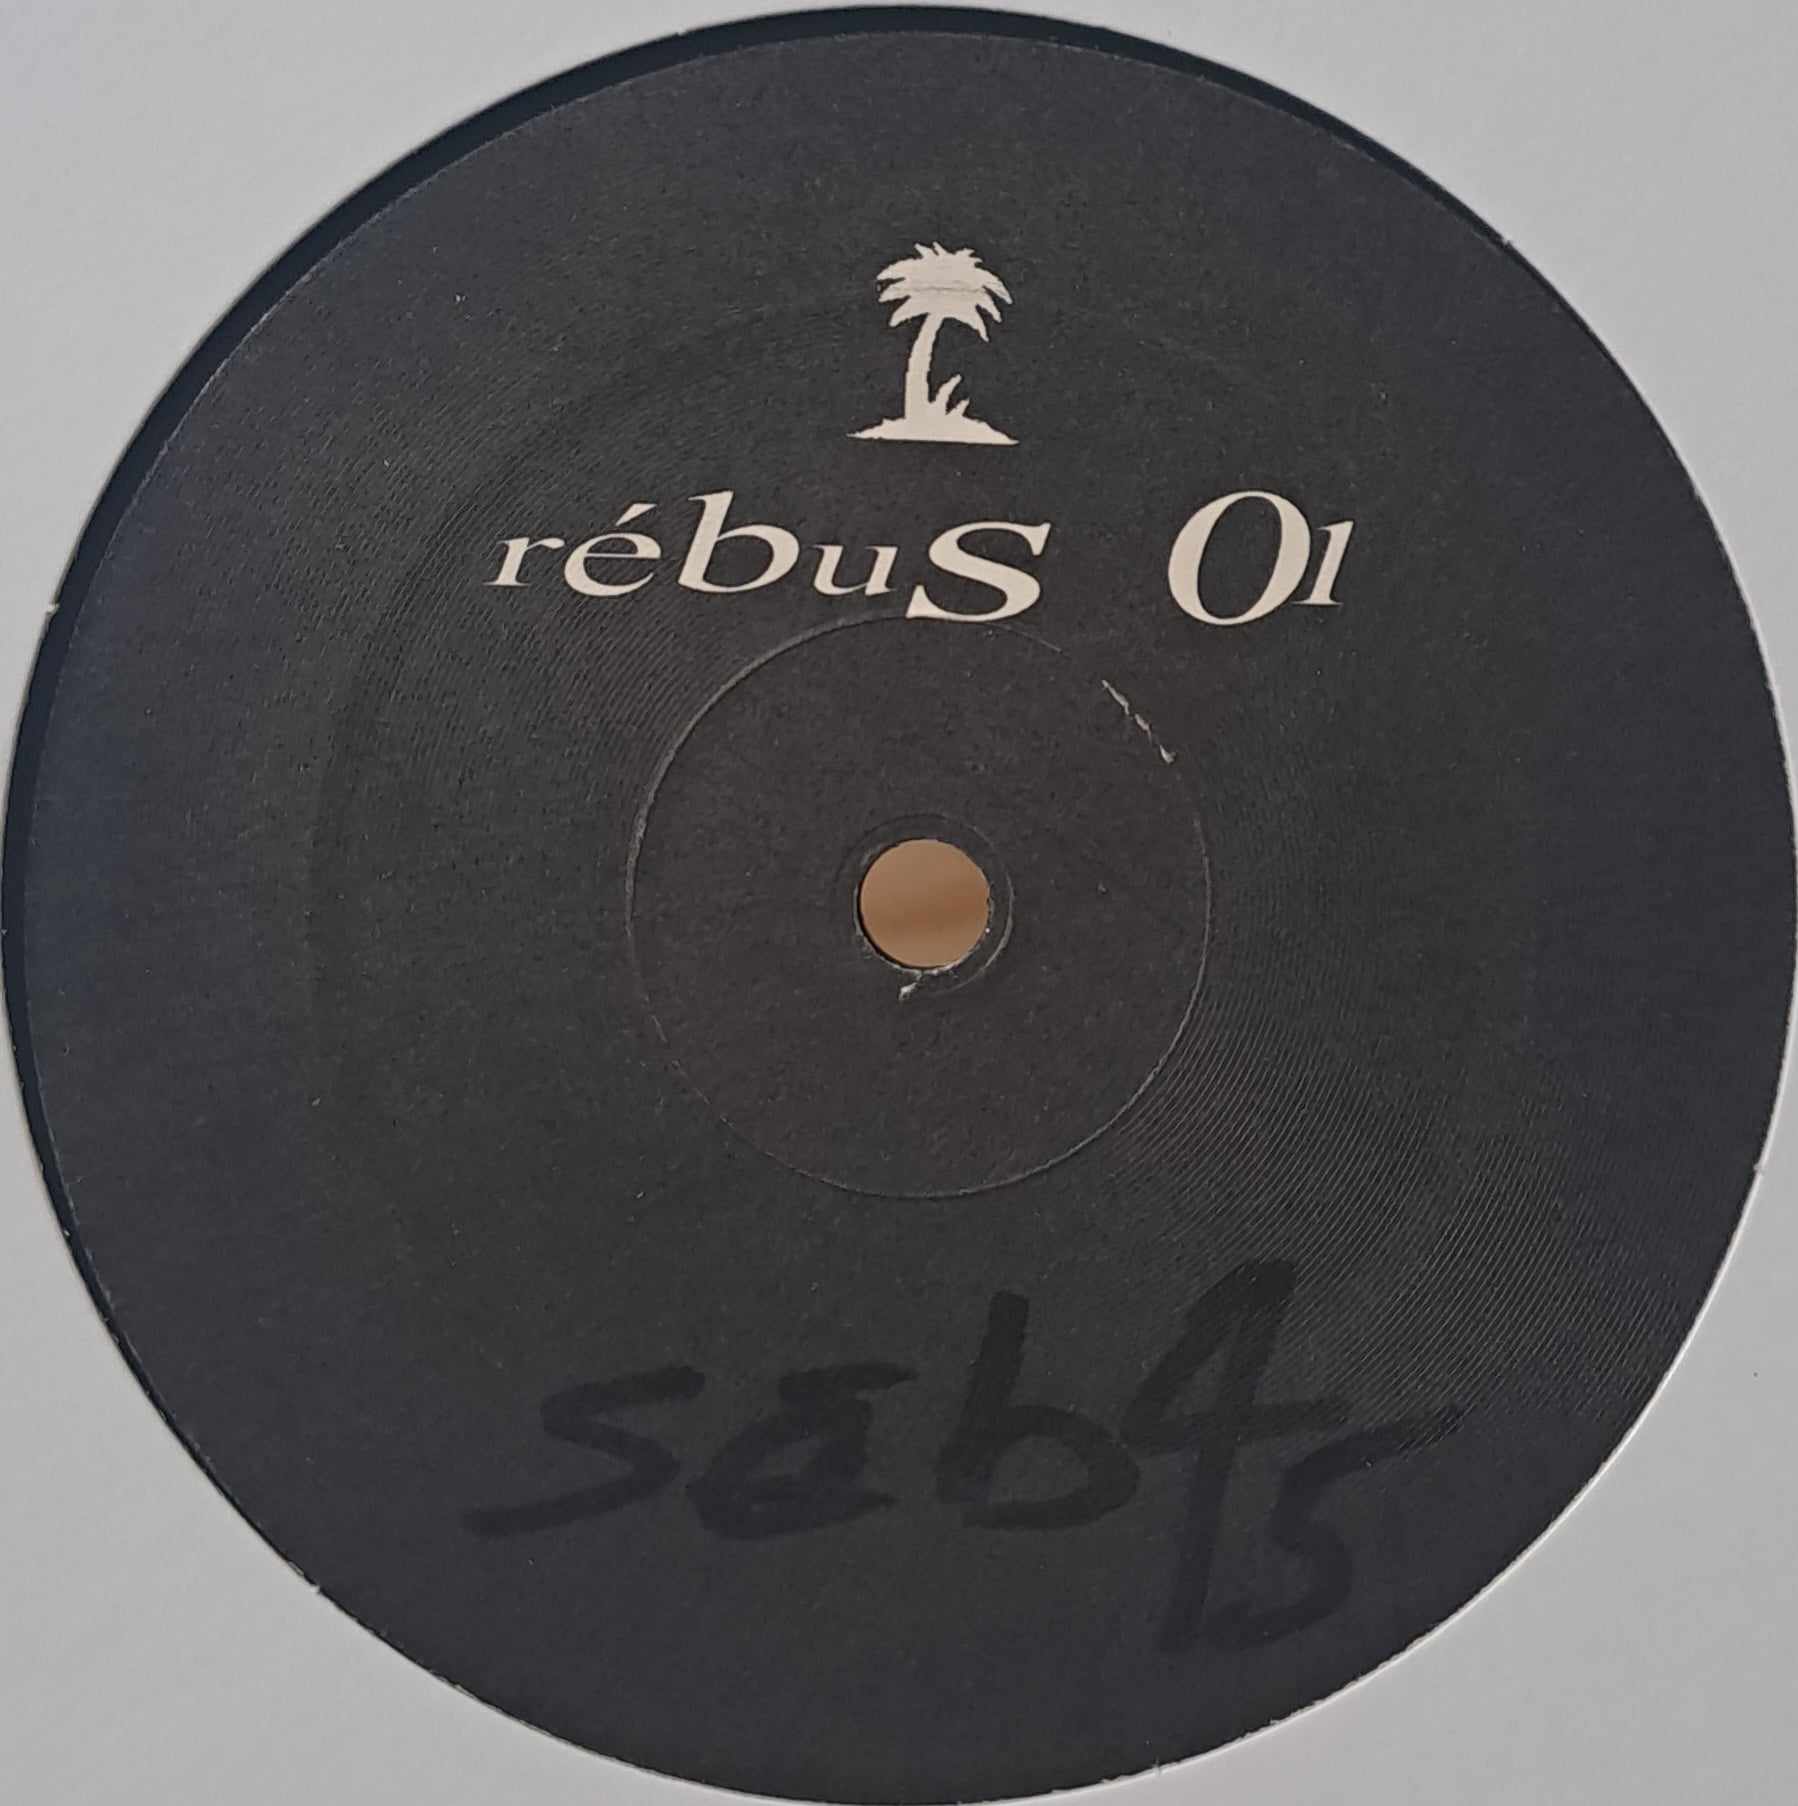 Rebus 01 - vinyle freetekno